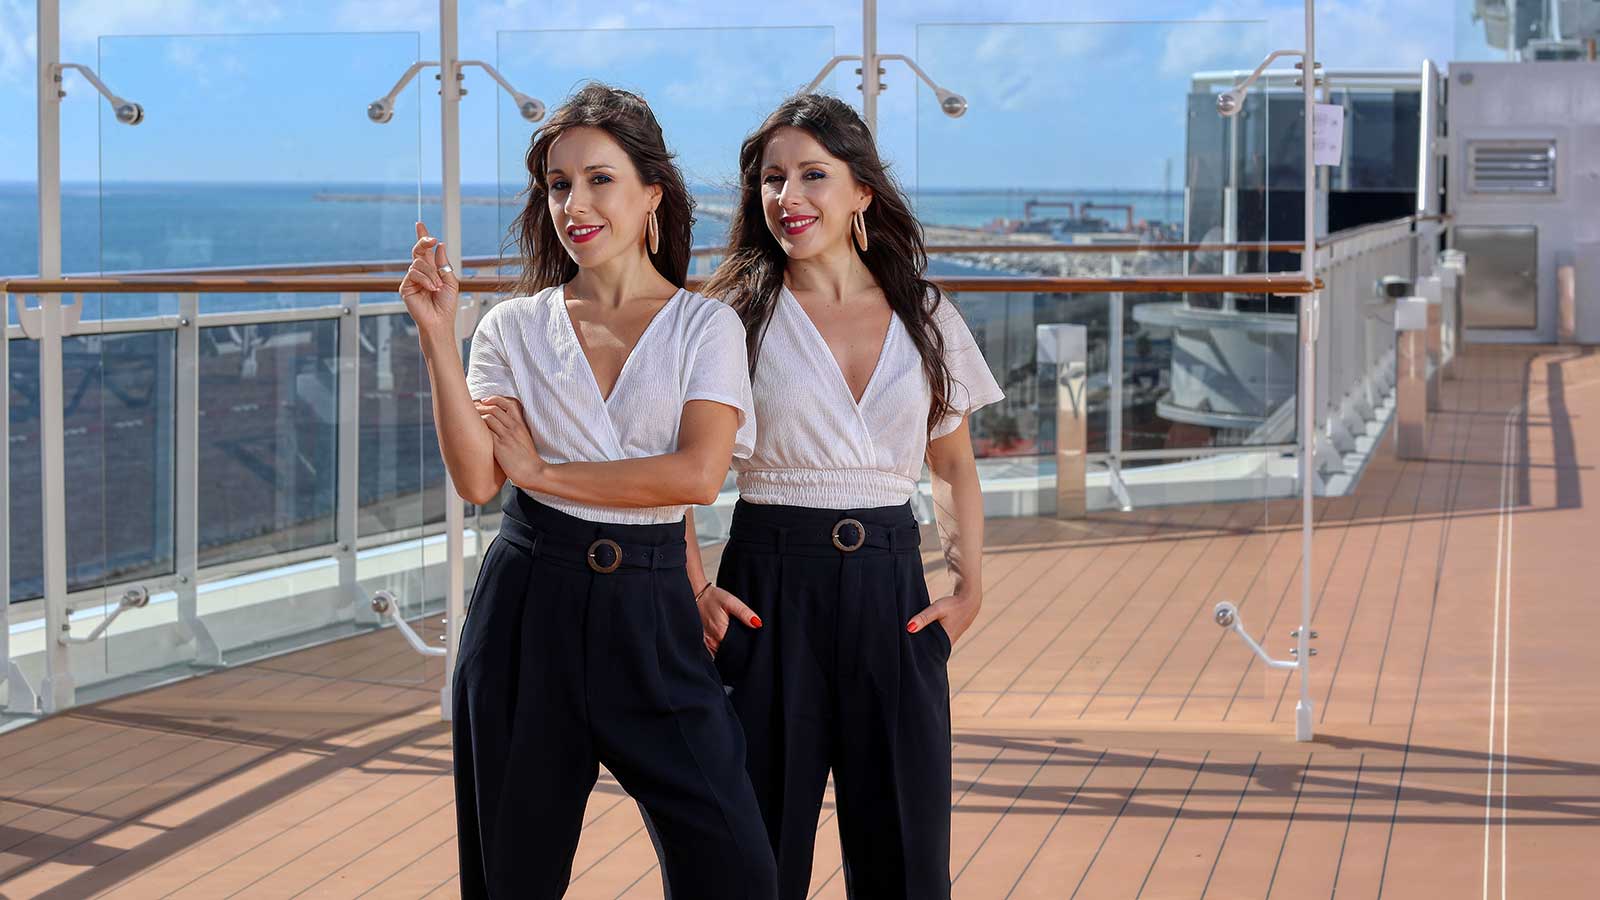 Cristina y Marisa, las camareras gemelas de 'First Dates': “Quisieron buscarnos pareja, pero dijimos que no”